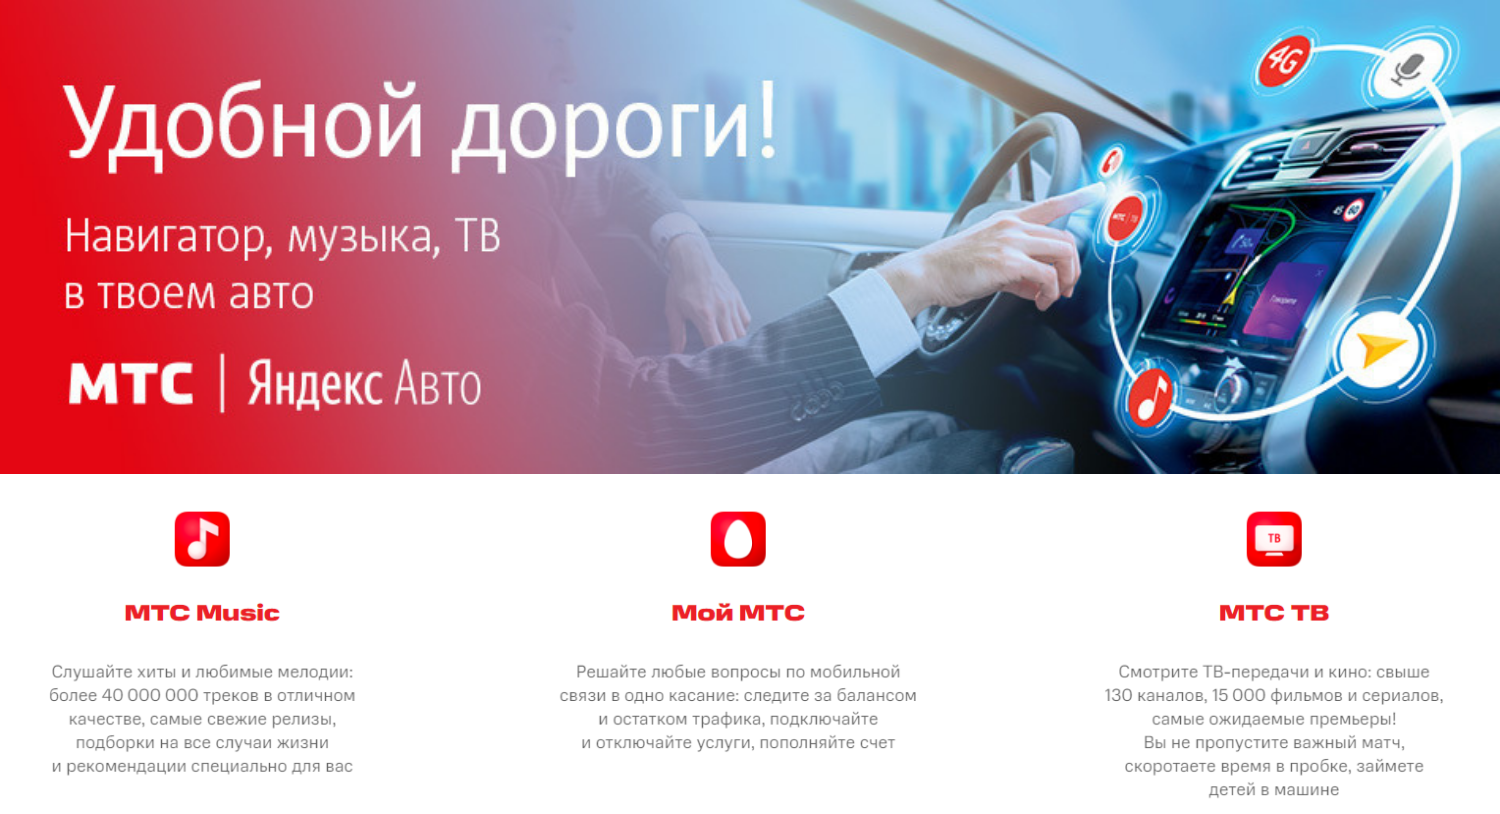 Приложения оператора входящий в комплект "МТС Яндекс.Авто"